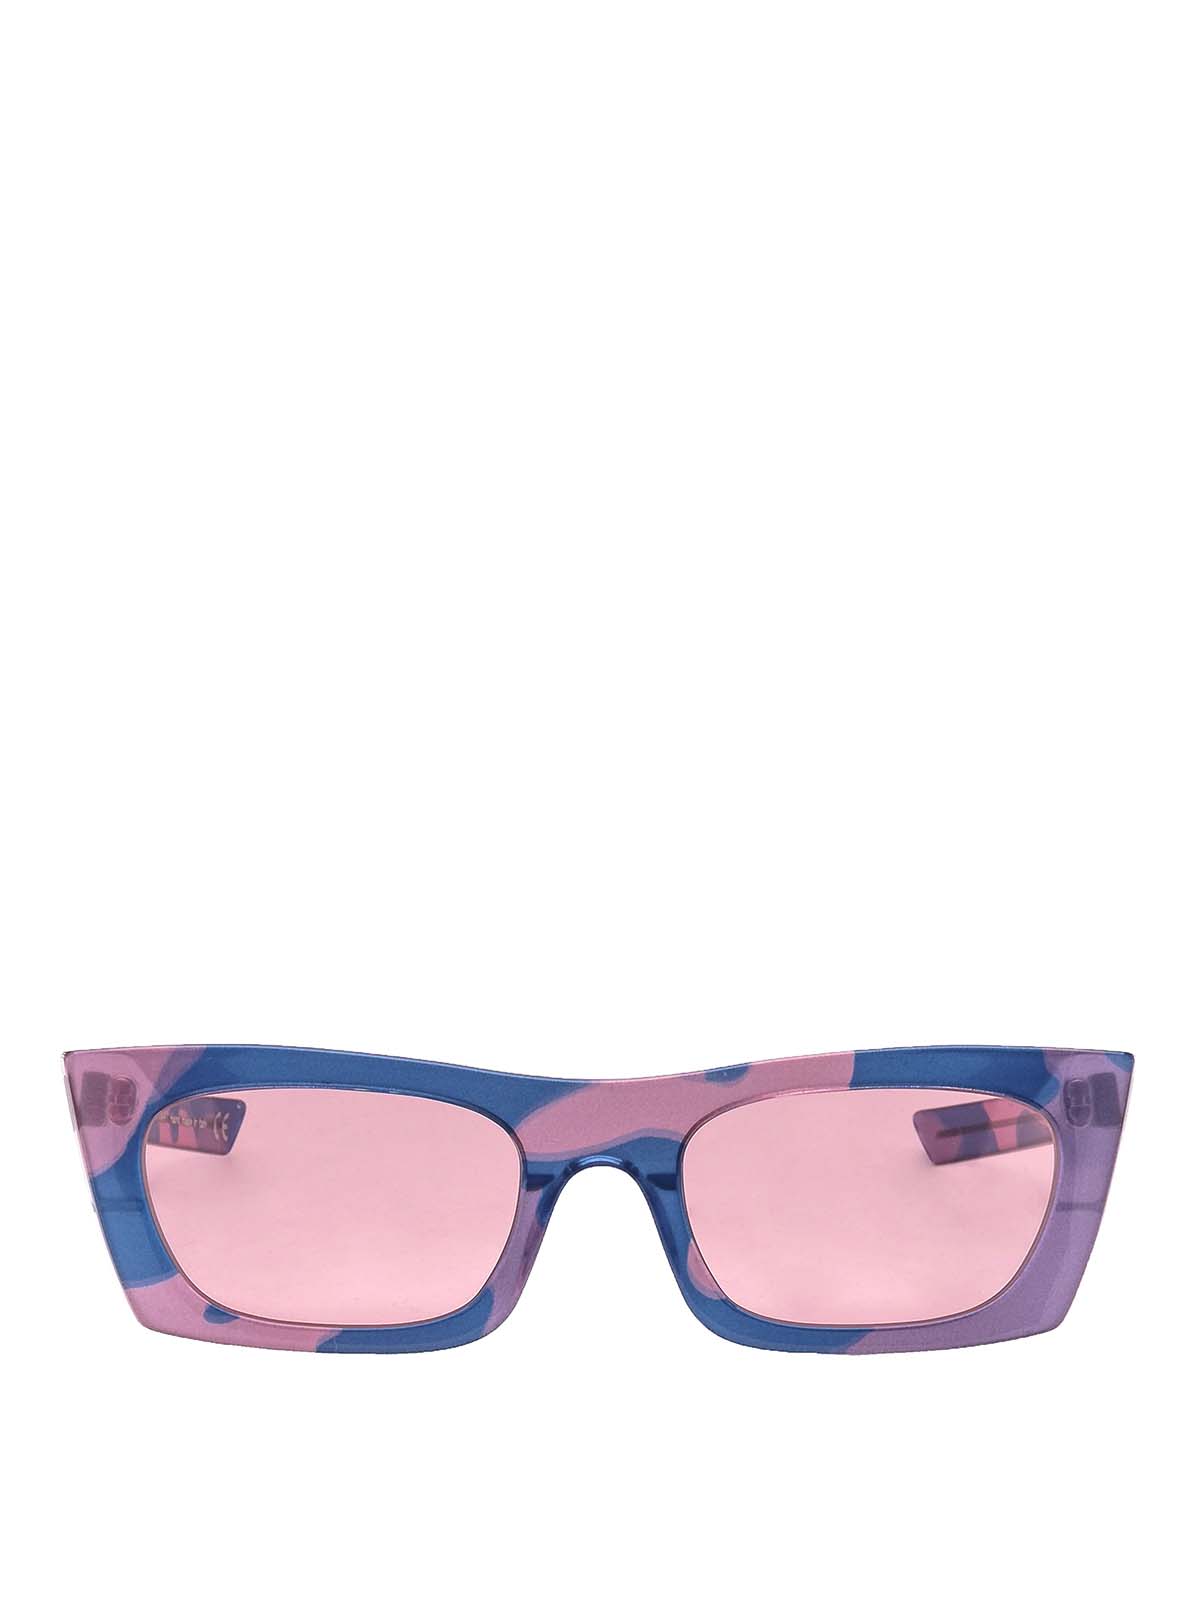 Sunglasses Retro Super Future - Andy Warhol squared sunglasses ...